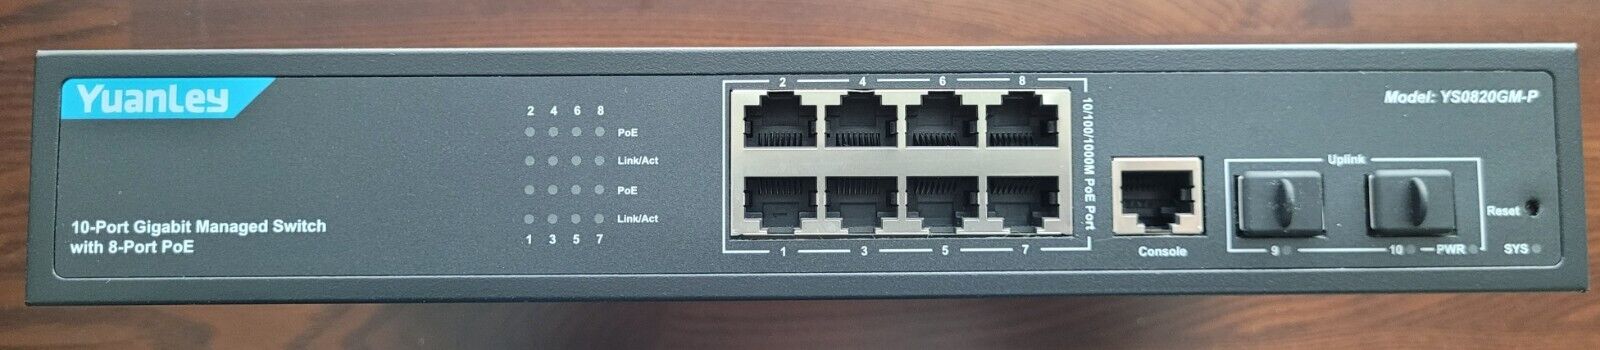 10 Ports 1000M Managed POE Switch 8 Gigabit Poe Ports+2 Gigabit SFP +1 Console